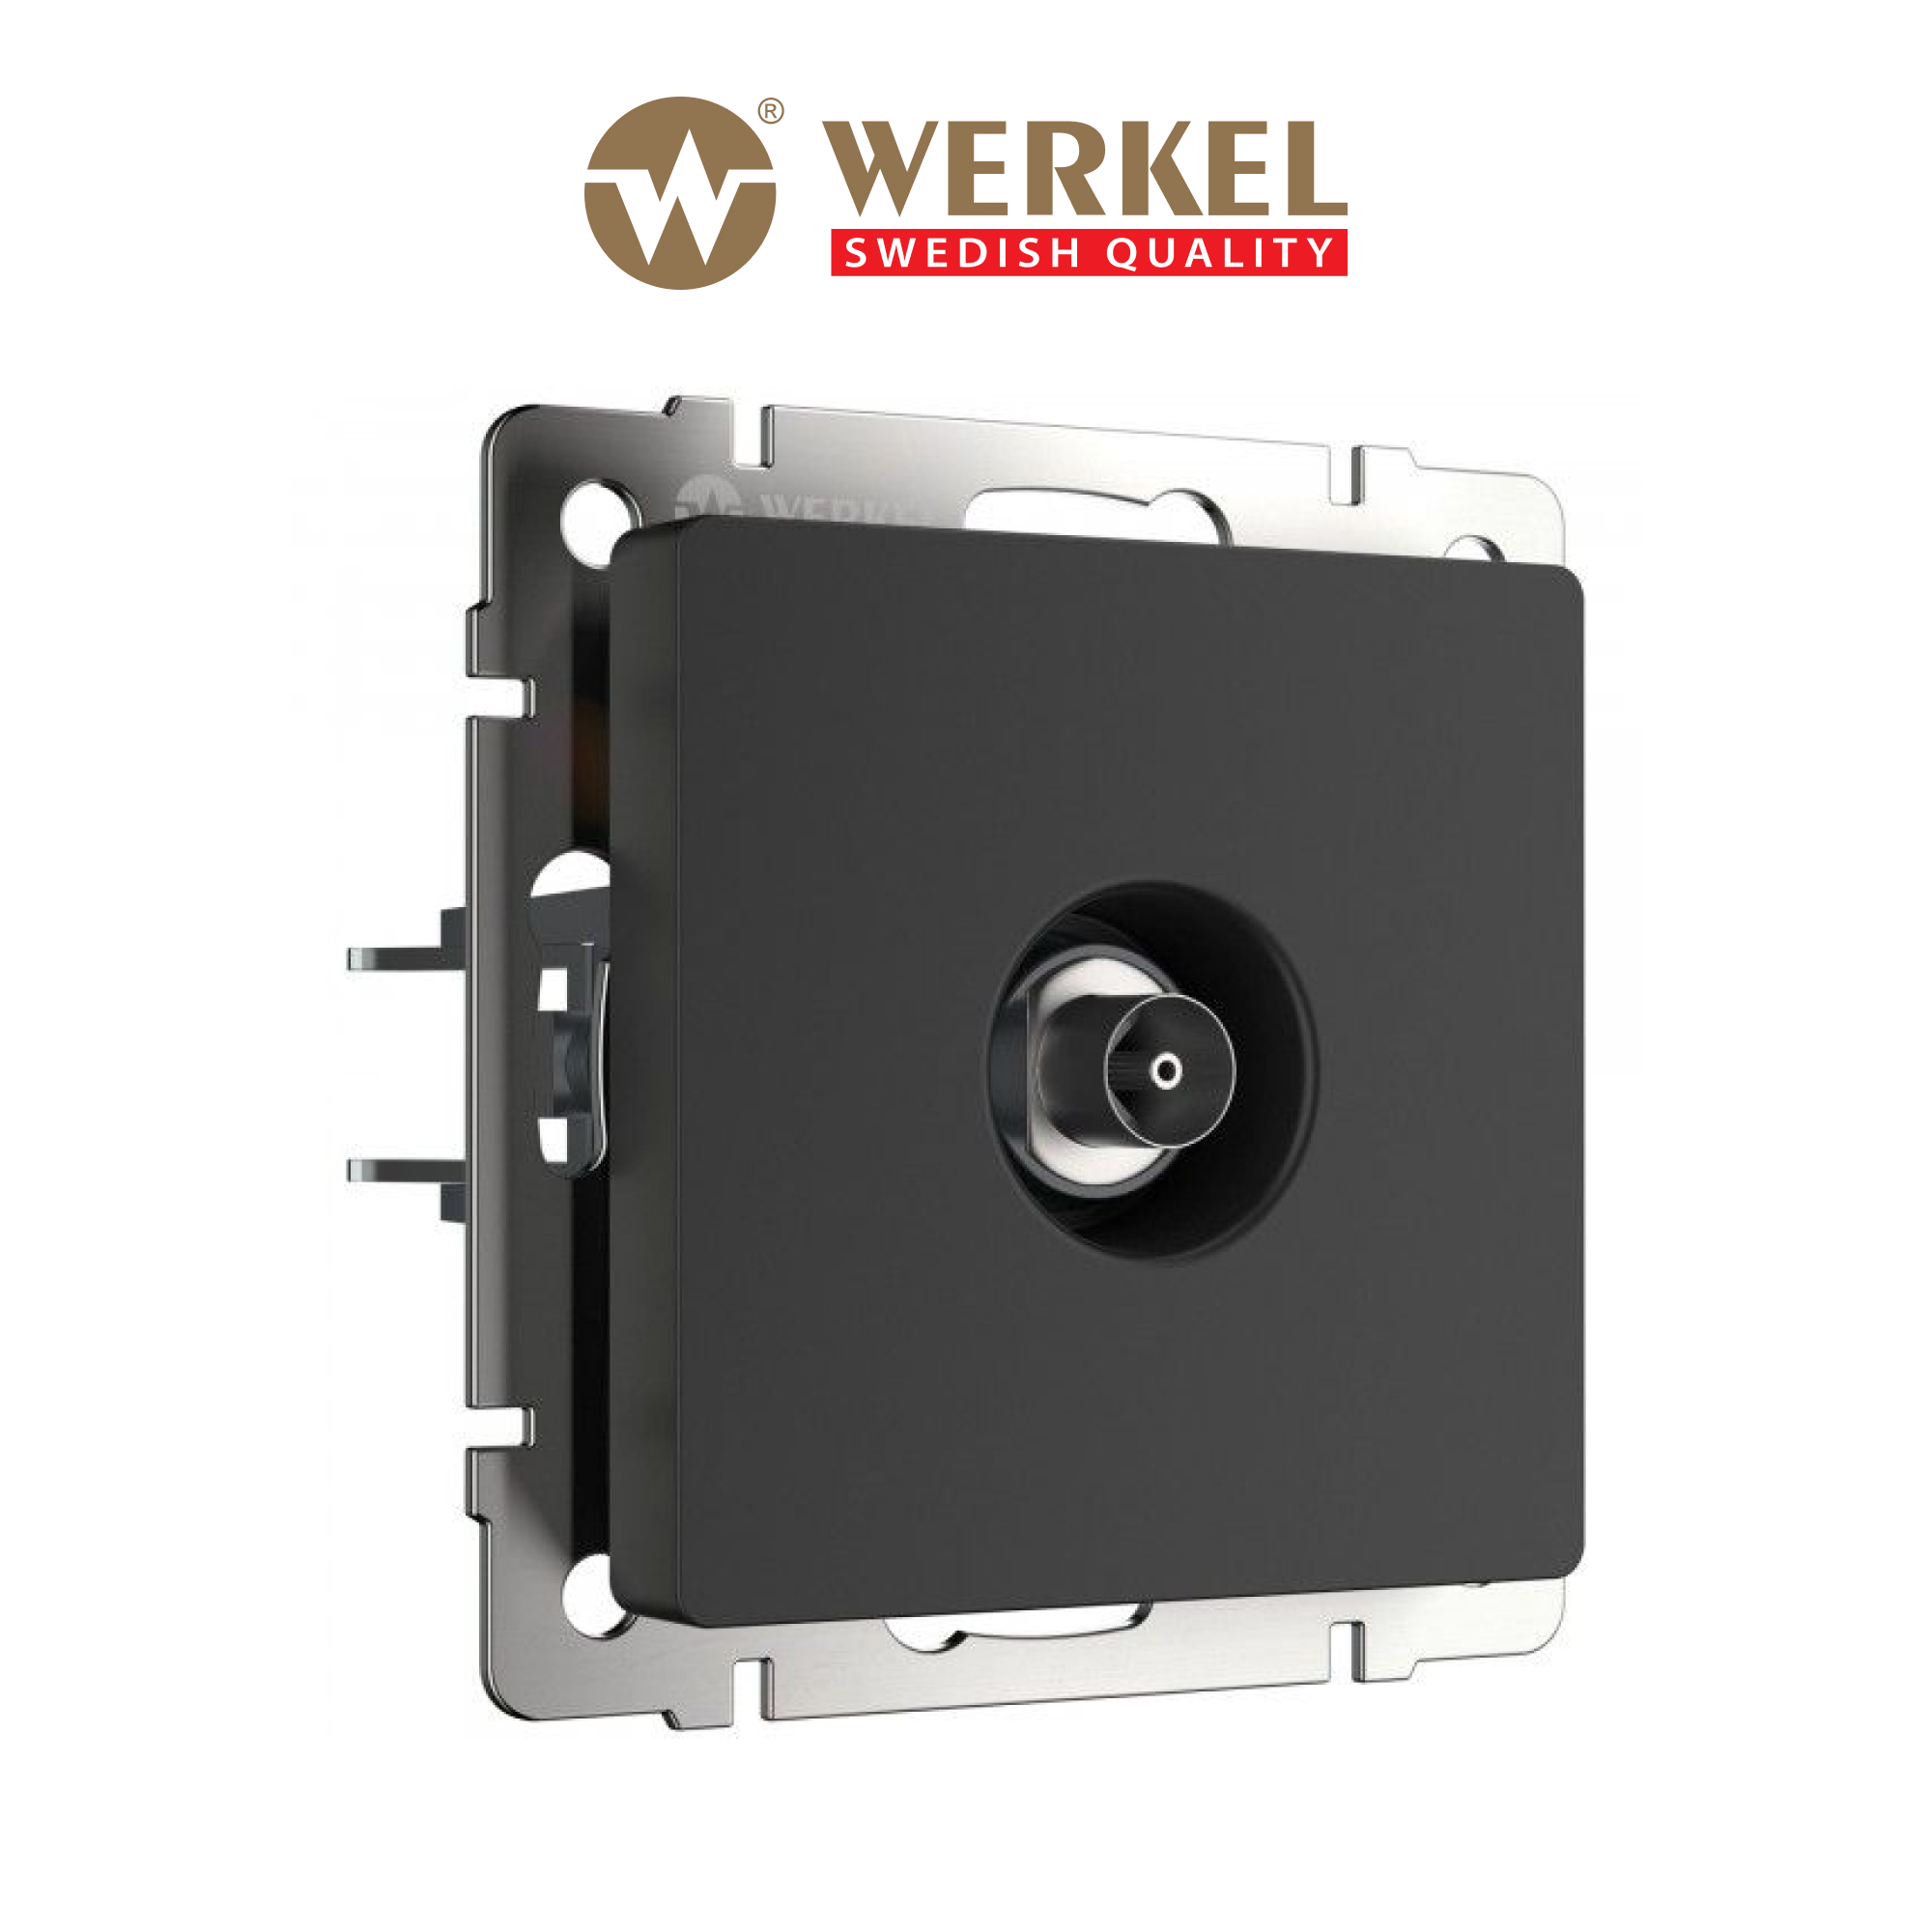  ТВ оконечная встраиваемая Werkel a051612, цвет черный по цене .